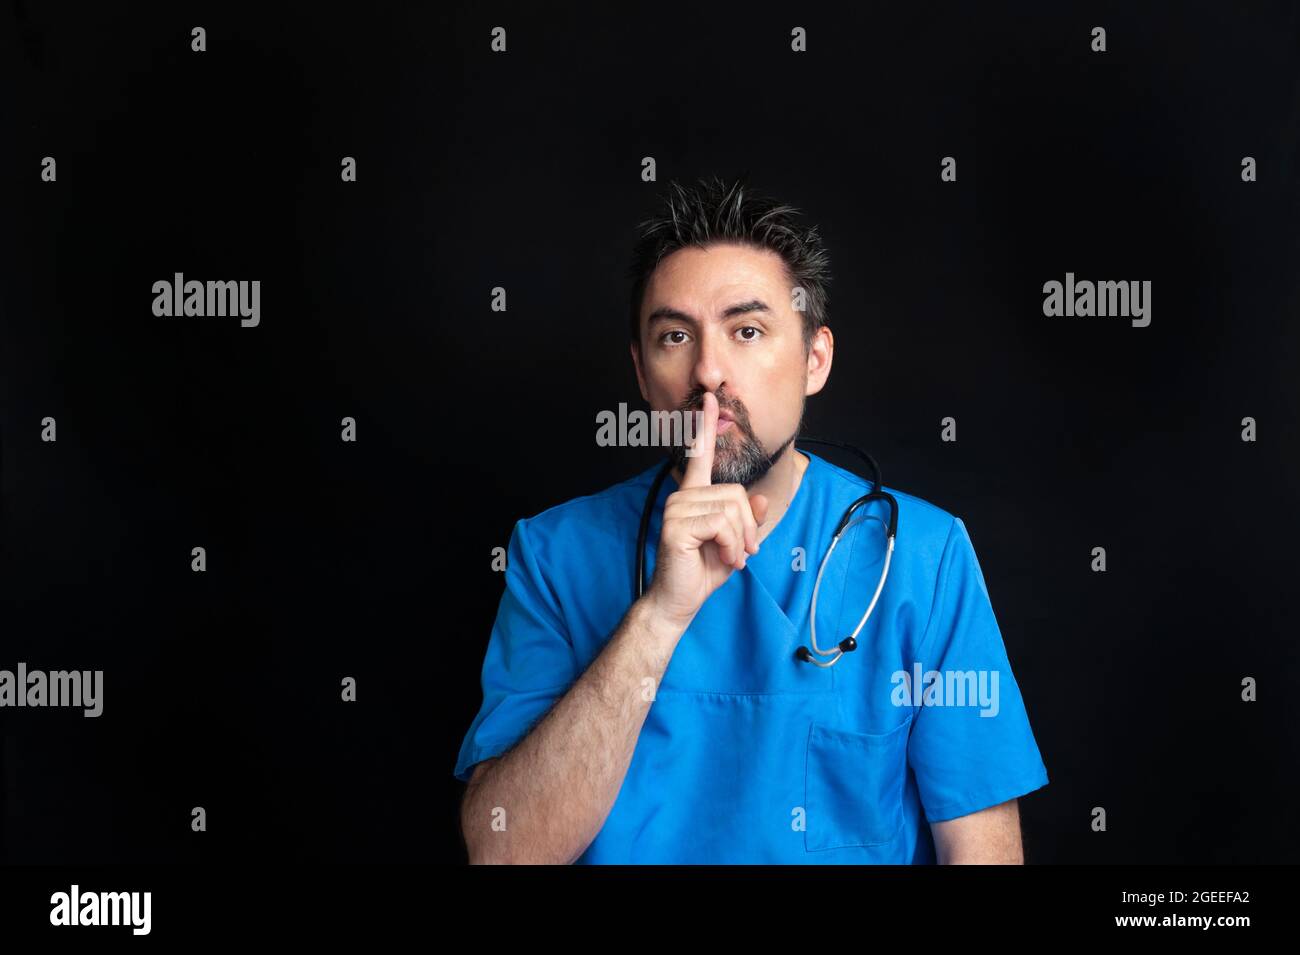 Un médecin vêtu d'un uniforme bleu d'hôpital, sombre et barbu, portant un stéthoscope autour de son cou, demande le silence avec son index Banque D'Images